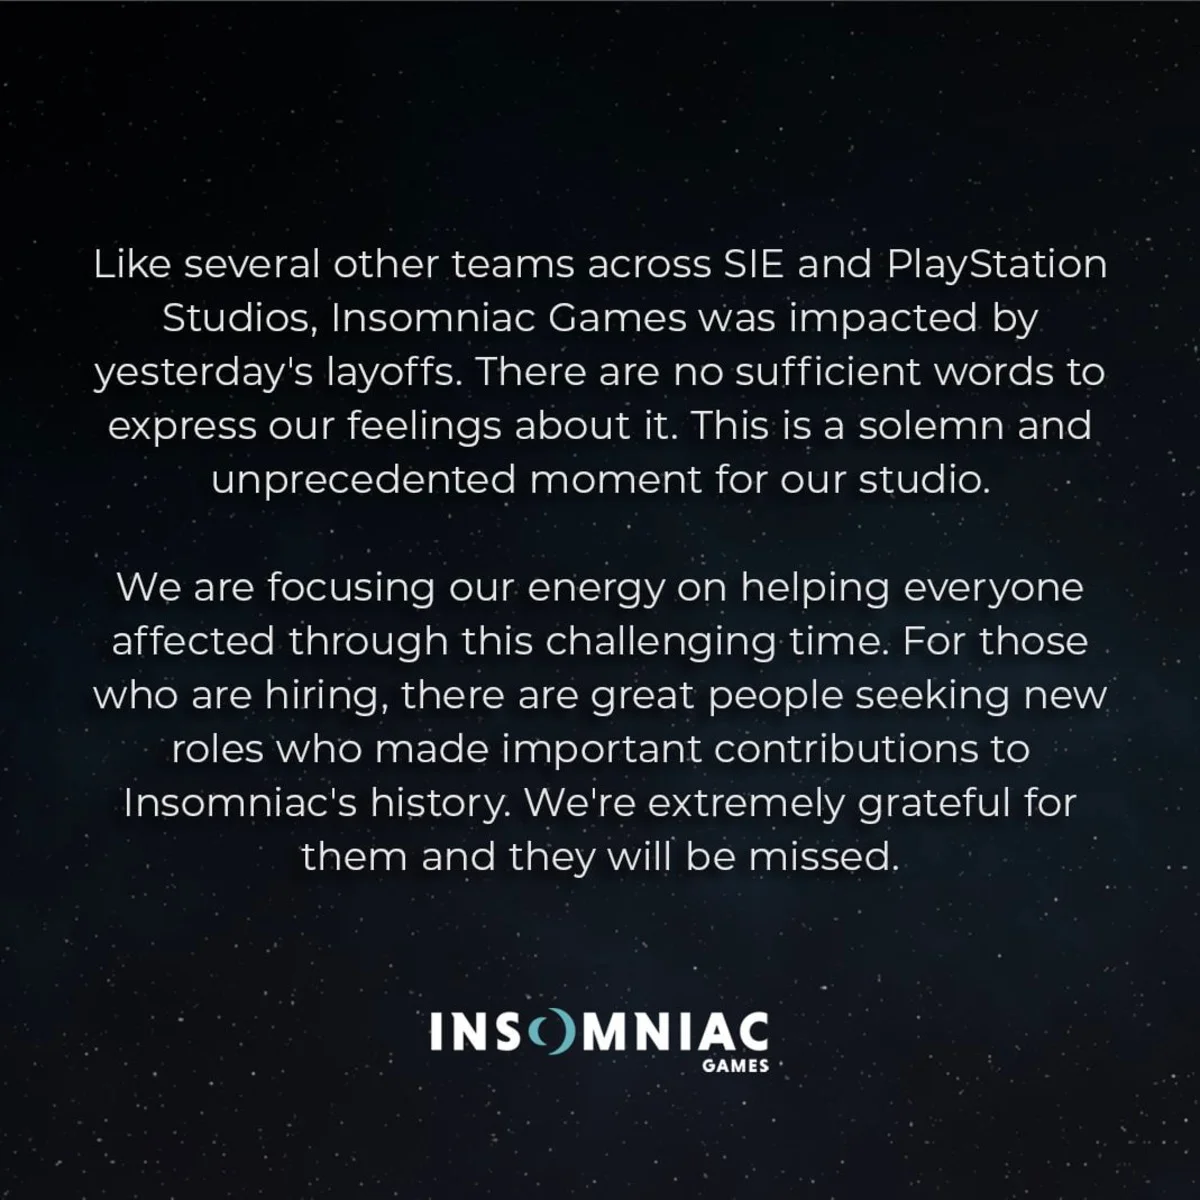 Авторы из Insomniac рассказали о тяжёлых чувствах в связи с увольнениями Sony - фото 1